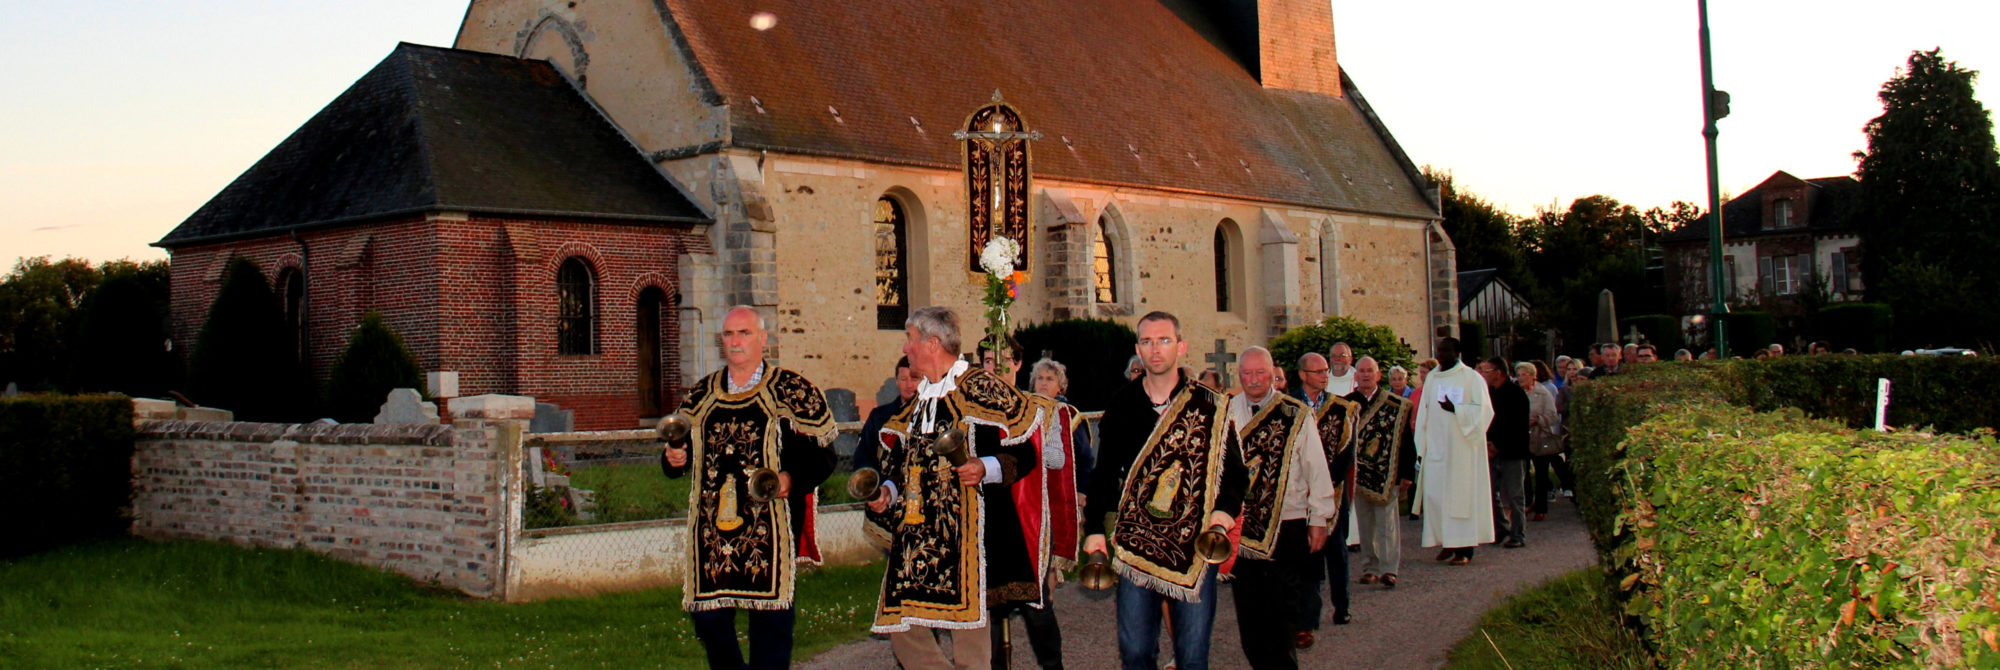 Les confréries de charité, une tradition perpétuée dans le Lieuvin Pays d'Auge
C’est dans l’ouest de l’Eure, au cœur de la Normandie, que les 1